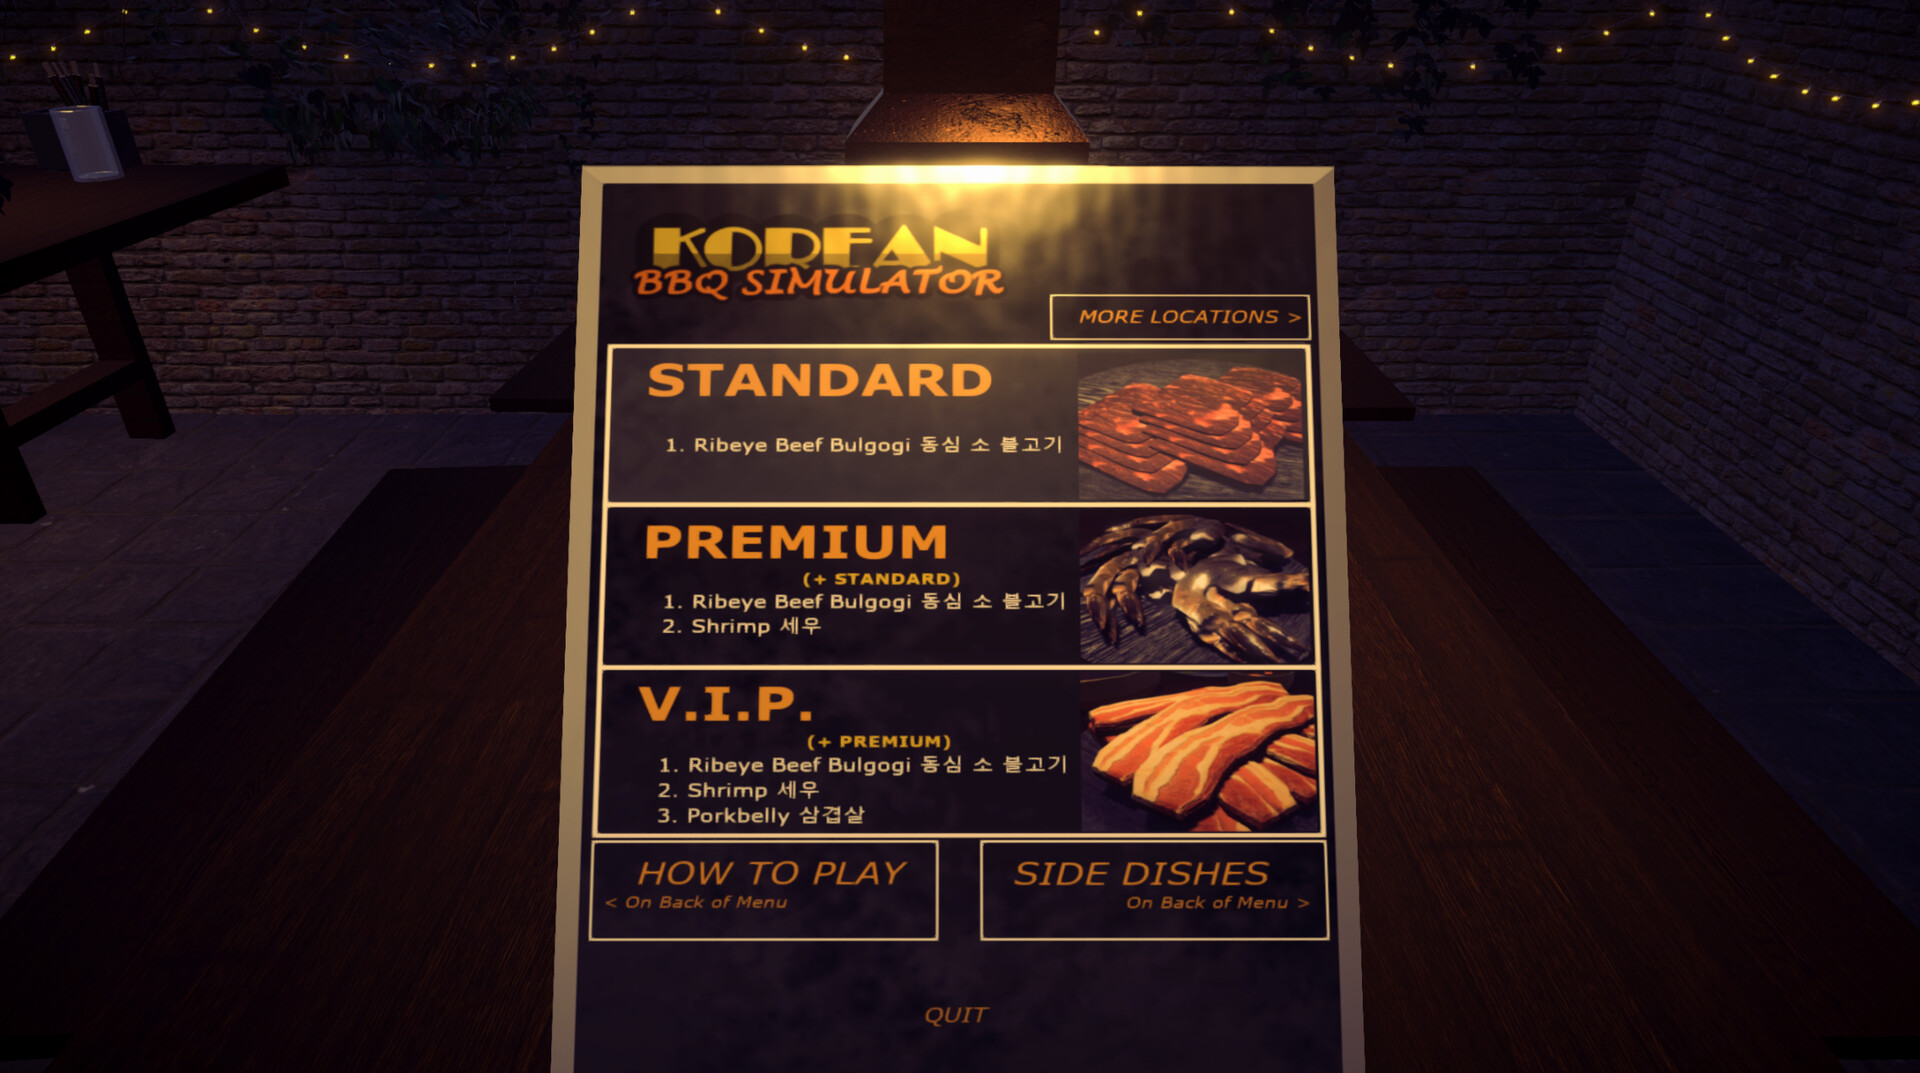 Korean BBQ Simulator Steam CD Key 4.42 $